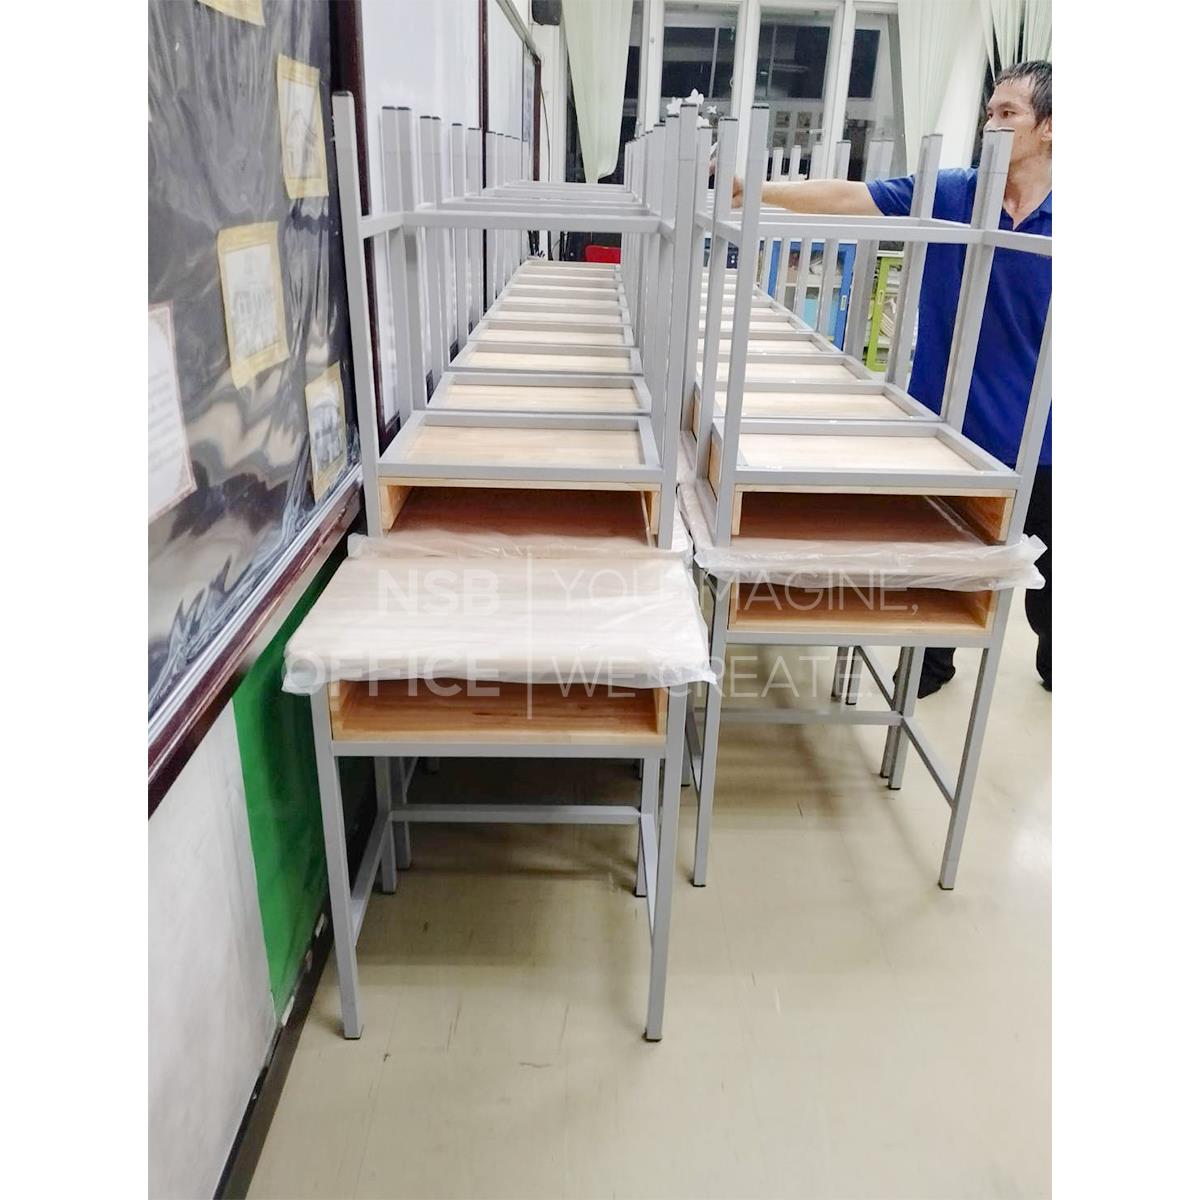 ชุดโต๊ะและเก้าอี้นักเรียนไม้ยางพารา รุ่น NEBRASKA (เนบราสกา)  ขาเหล็กเหลี่ยม ระดับประถมศึกษา